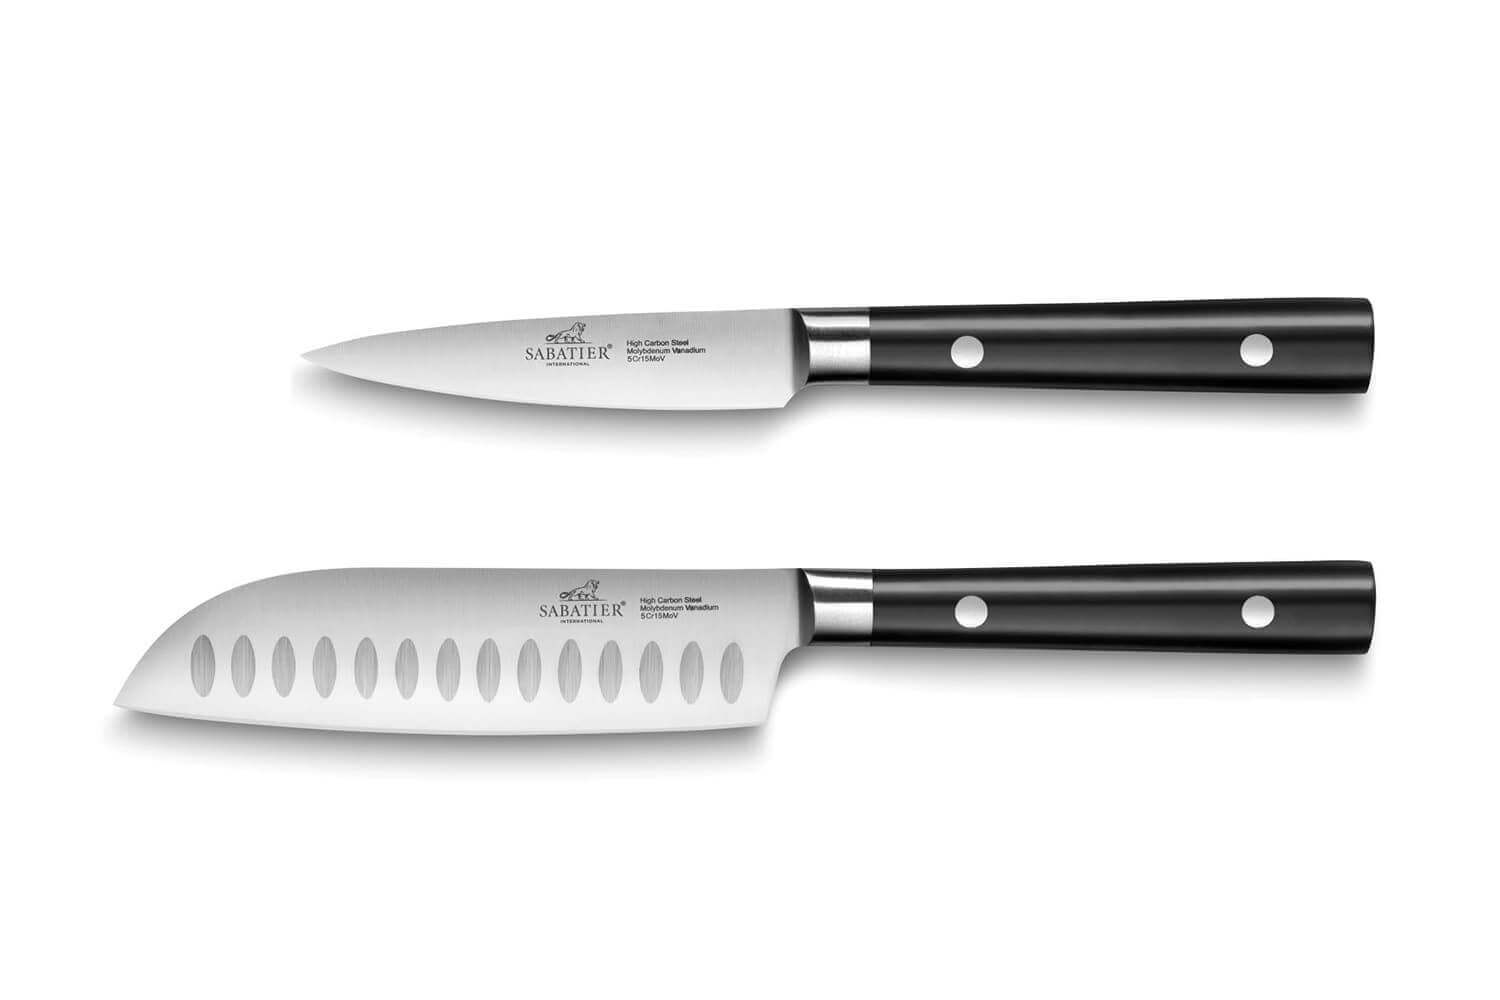 L'ABC du couteau pour cuisiner à la maison - Sobeys Inc.